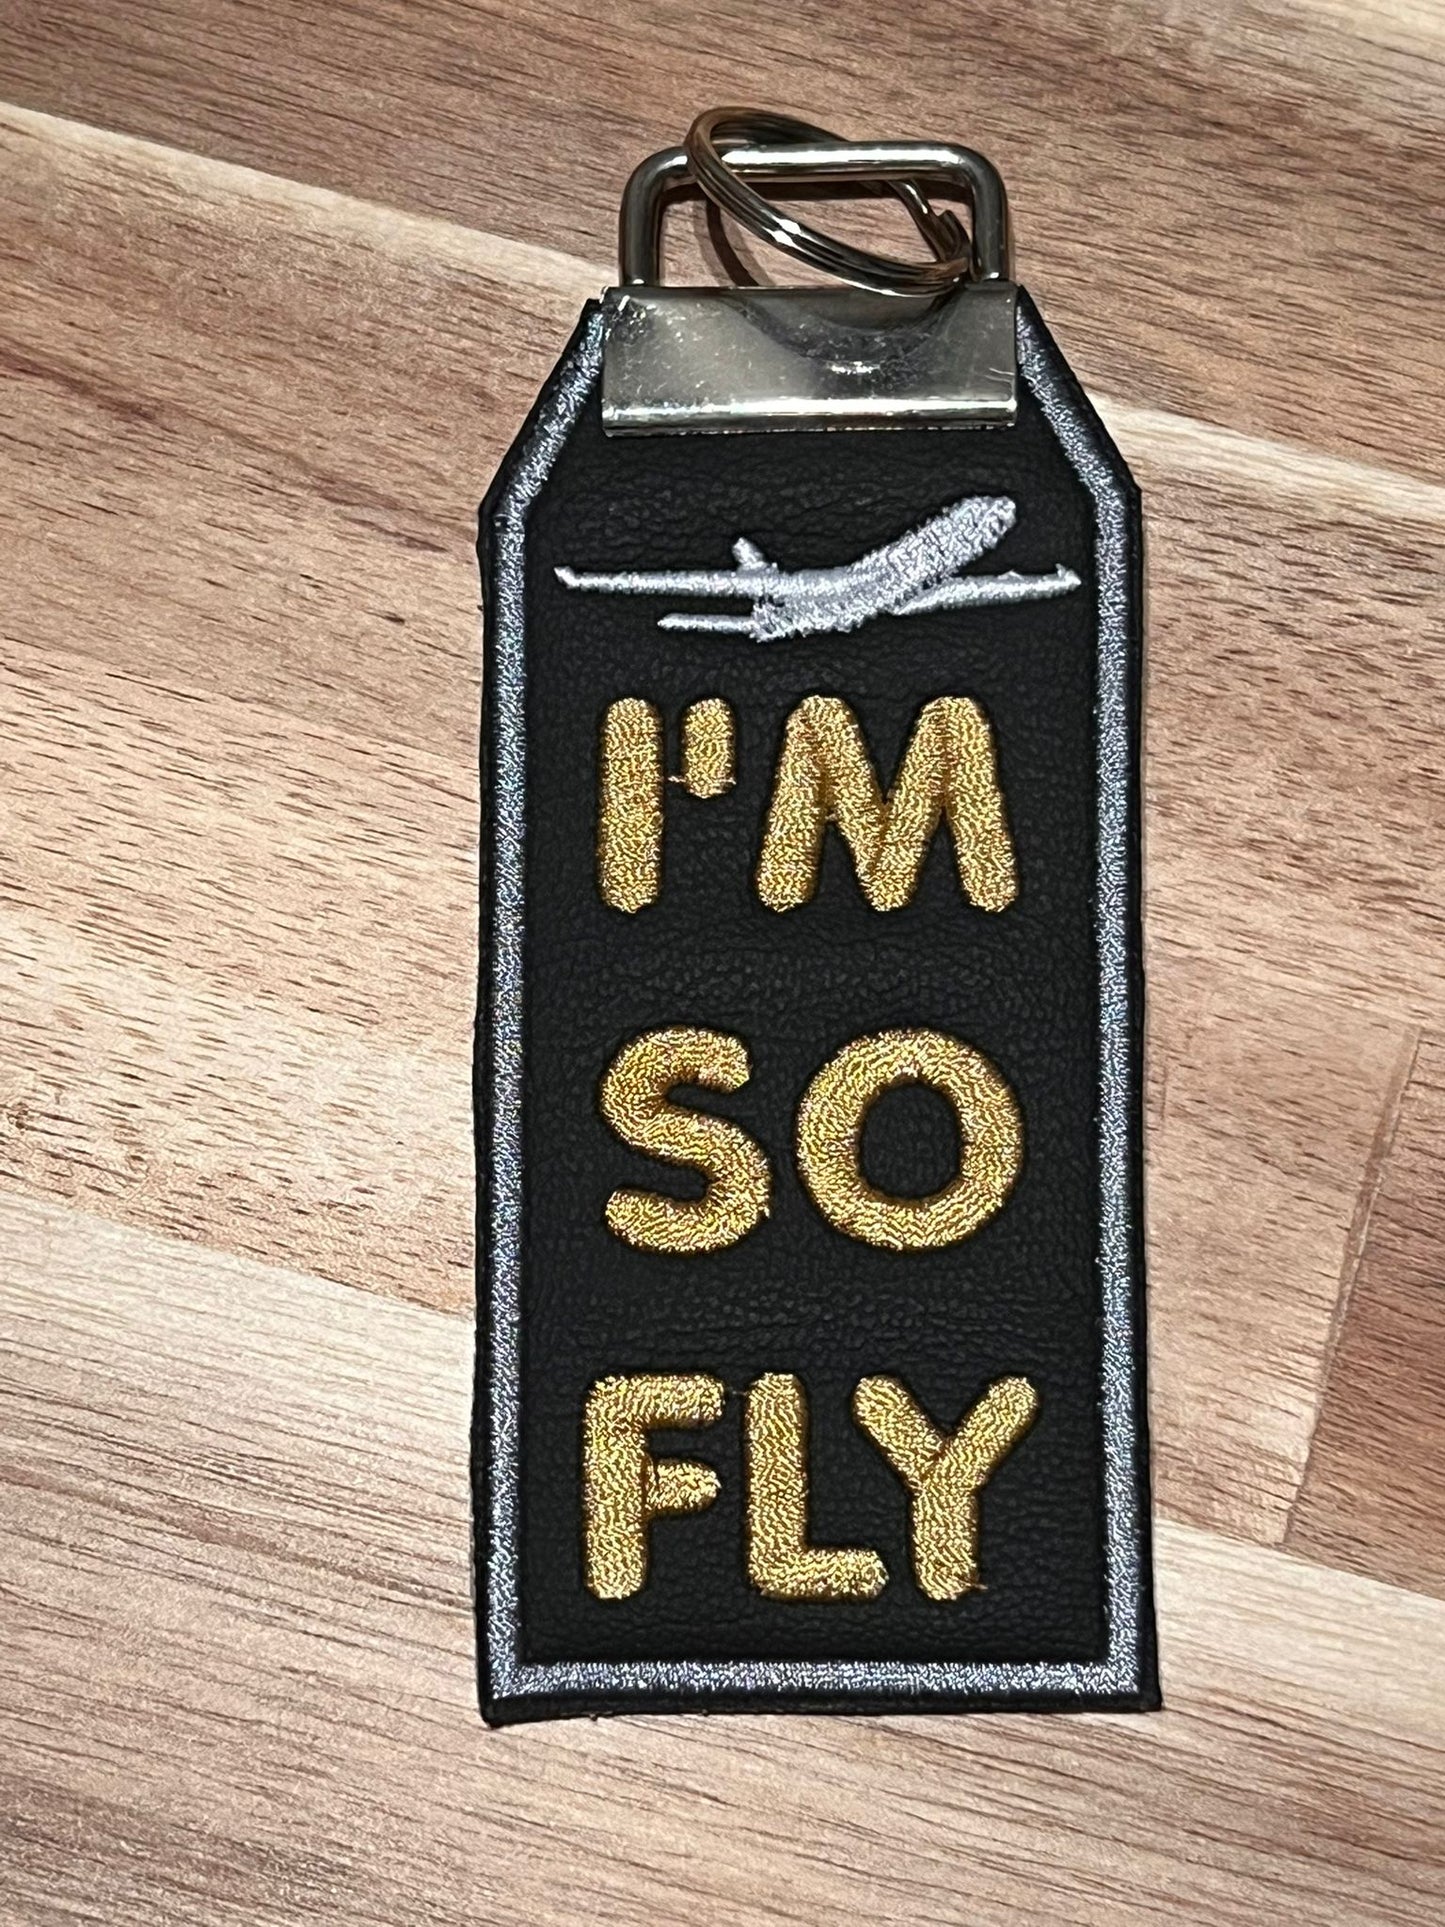 I'M SO FLY!/KeyRing/Gray Border Clearance